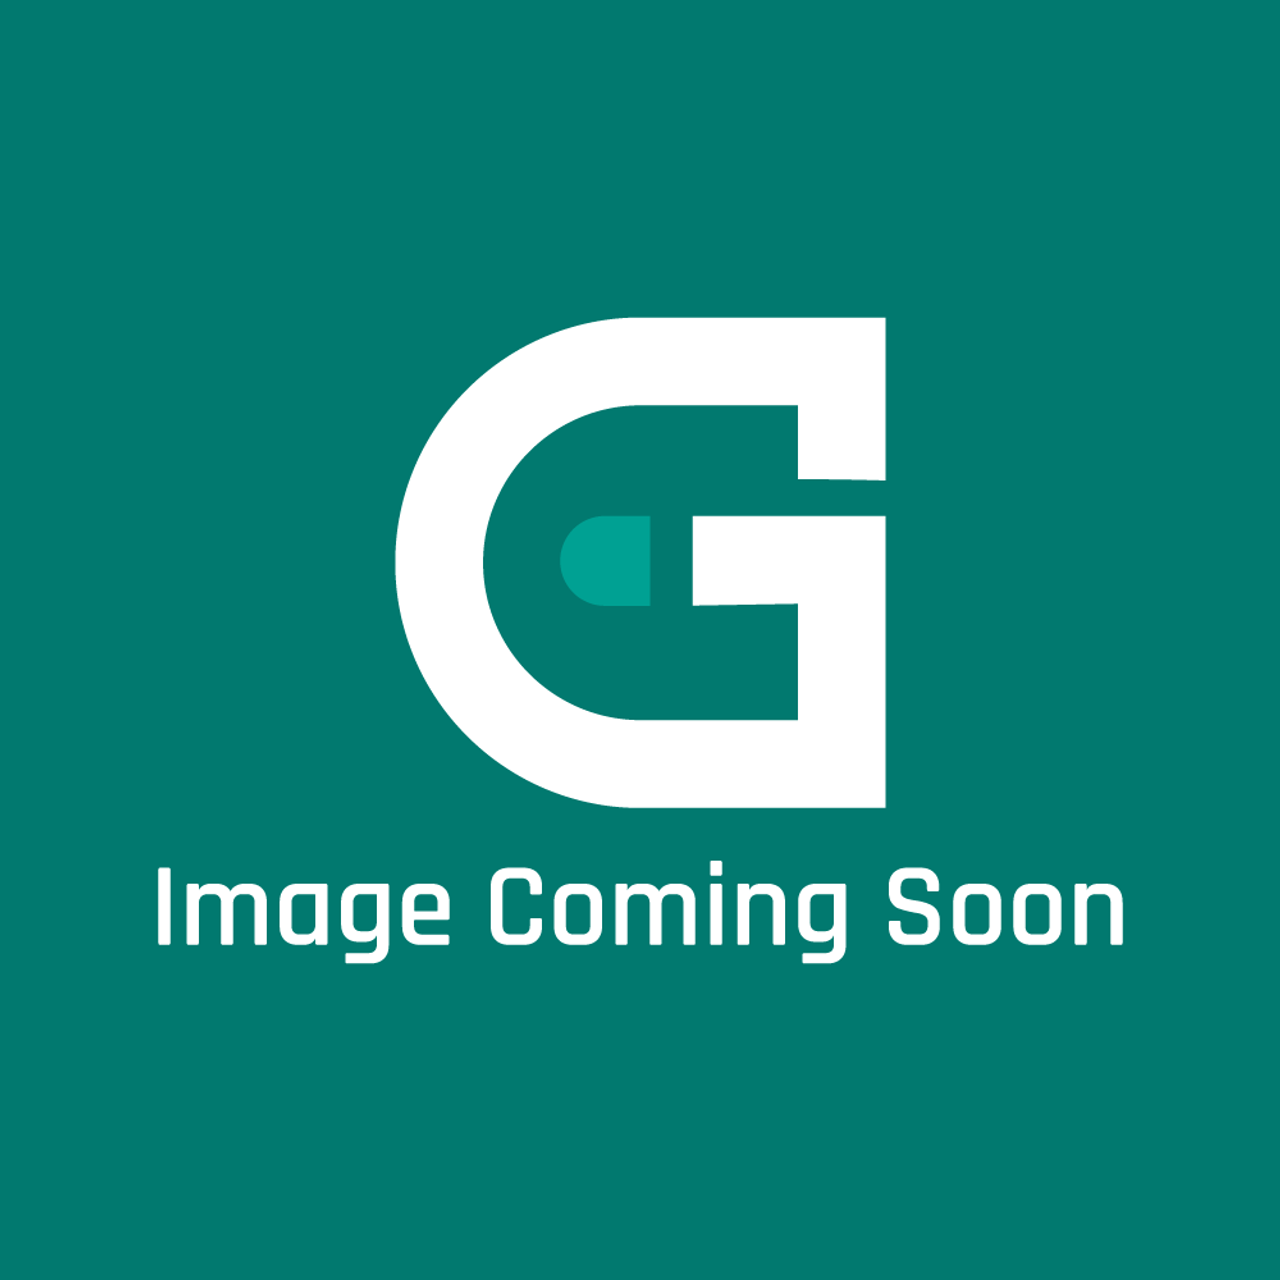 LG 4986UTL004A - Gasket - Image Coming Soon!